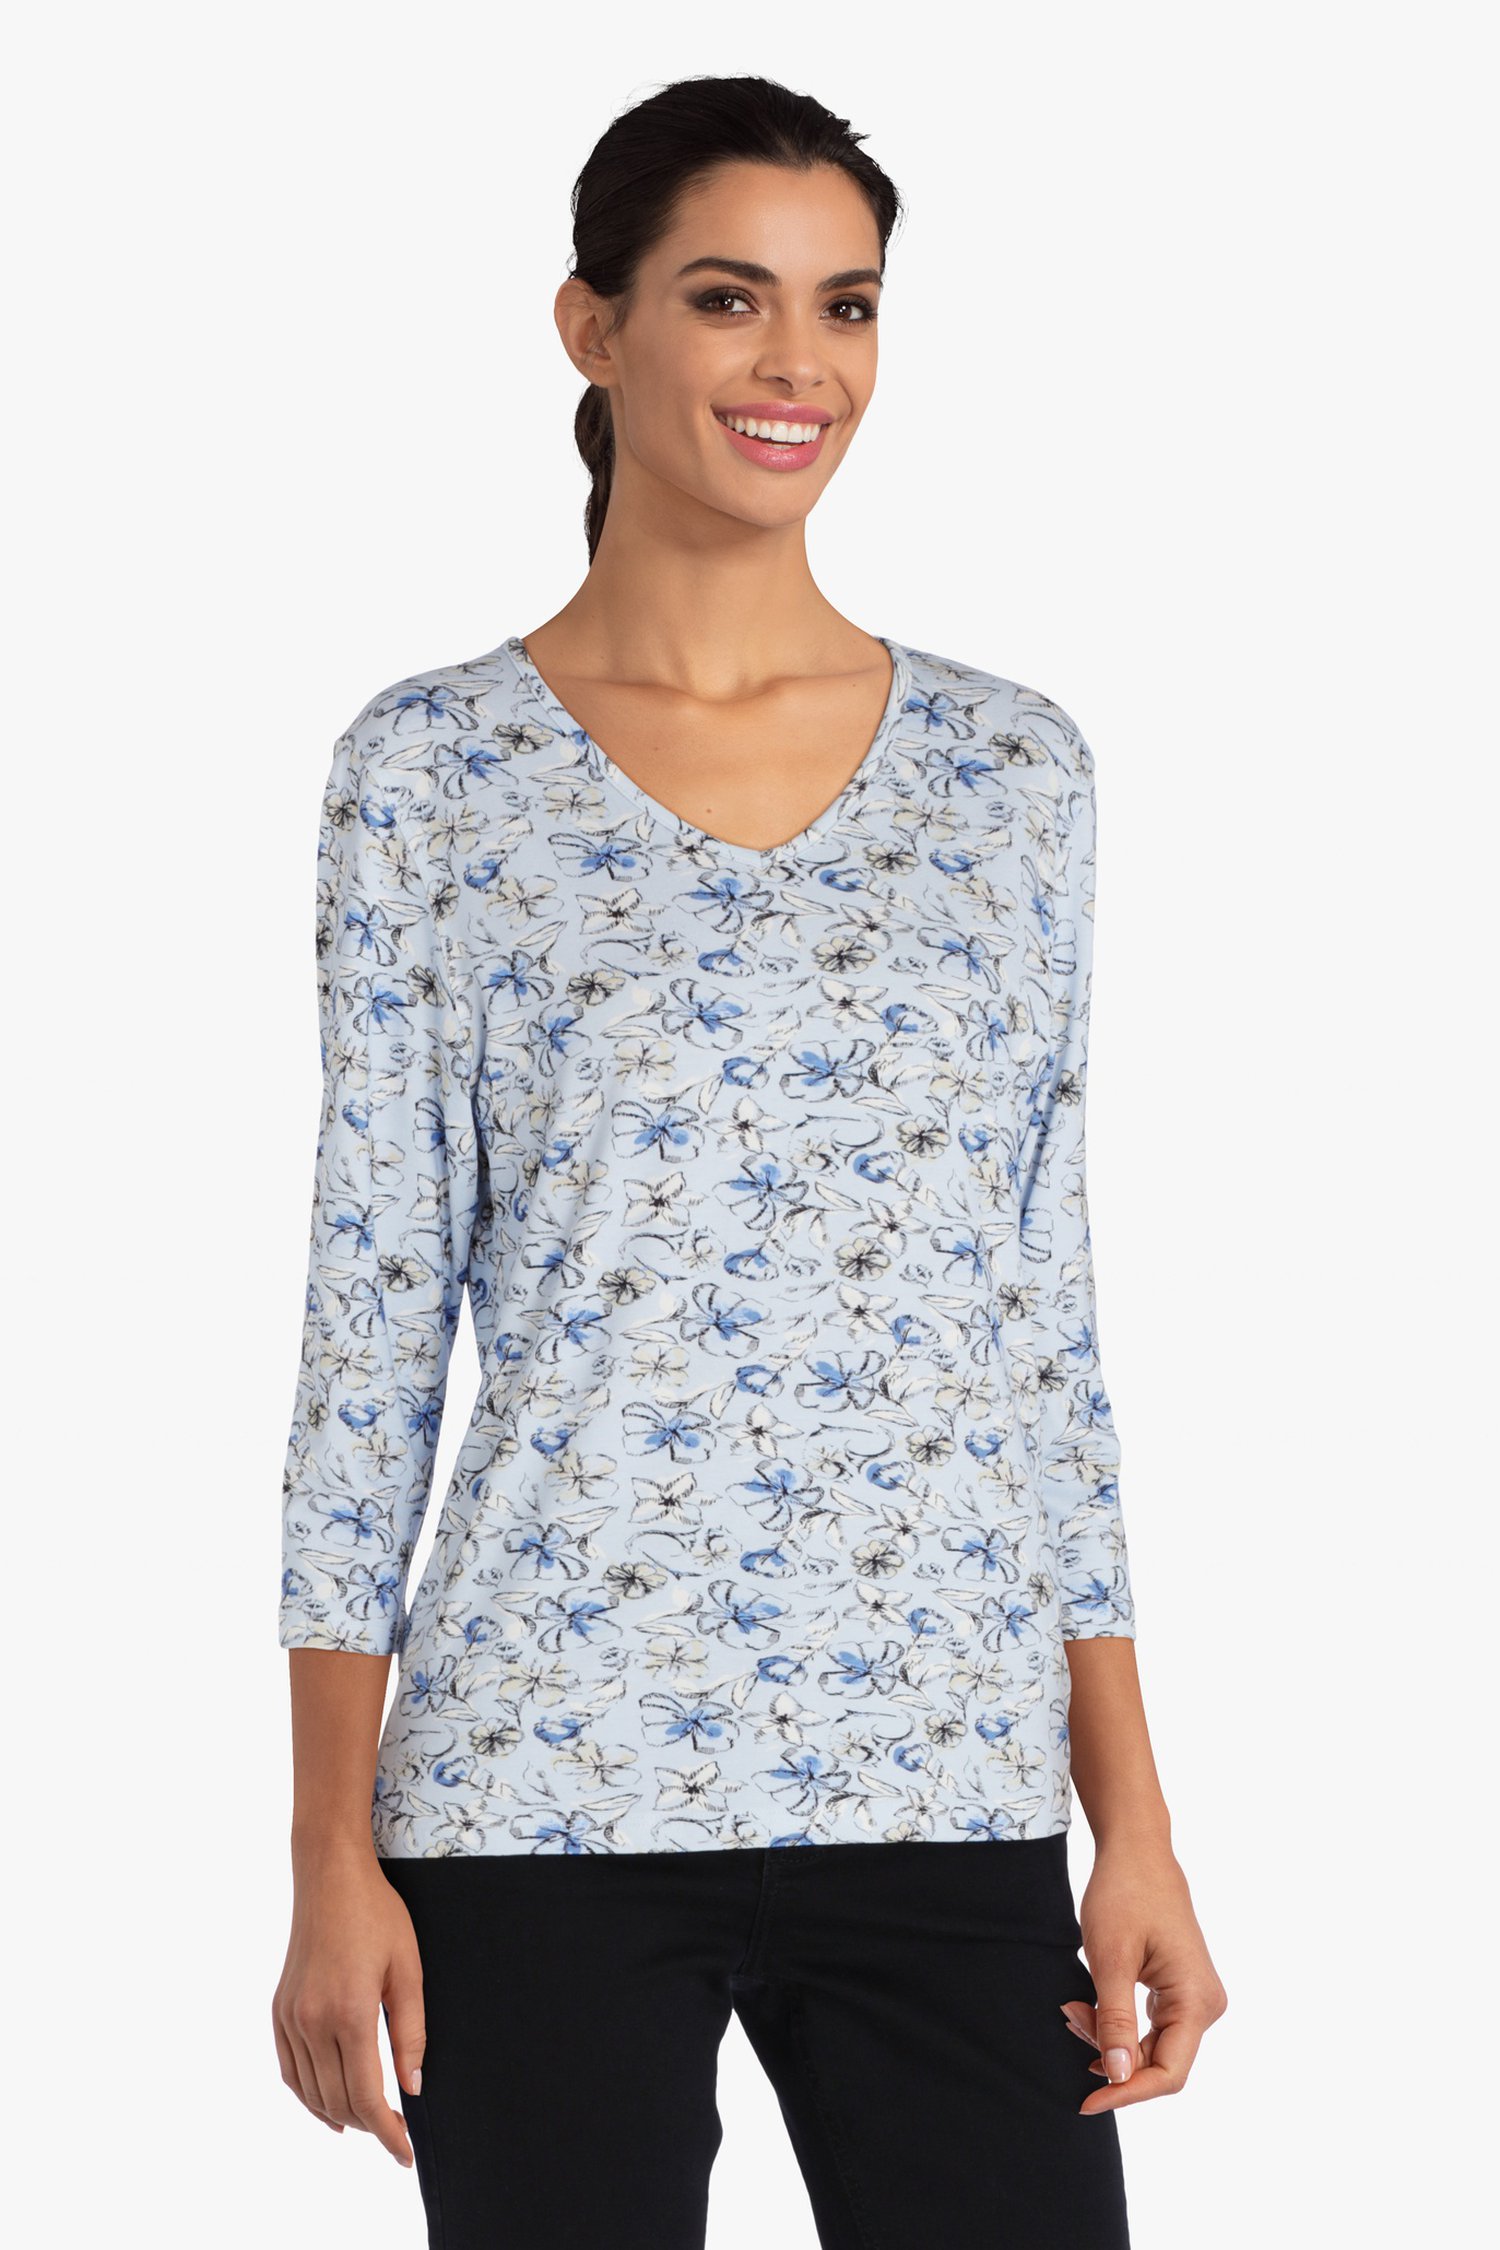 Lichtblauw T-shirt met bloemenprint van Bicalla voor Dames